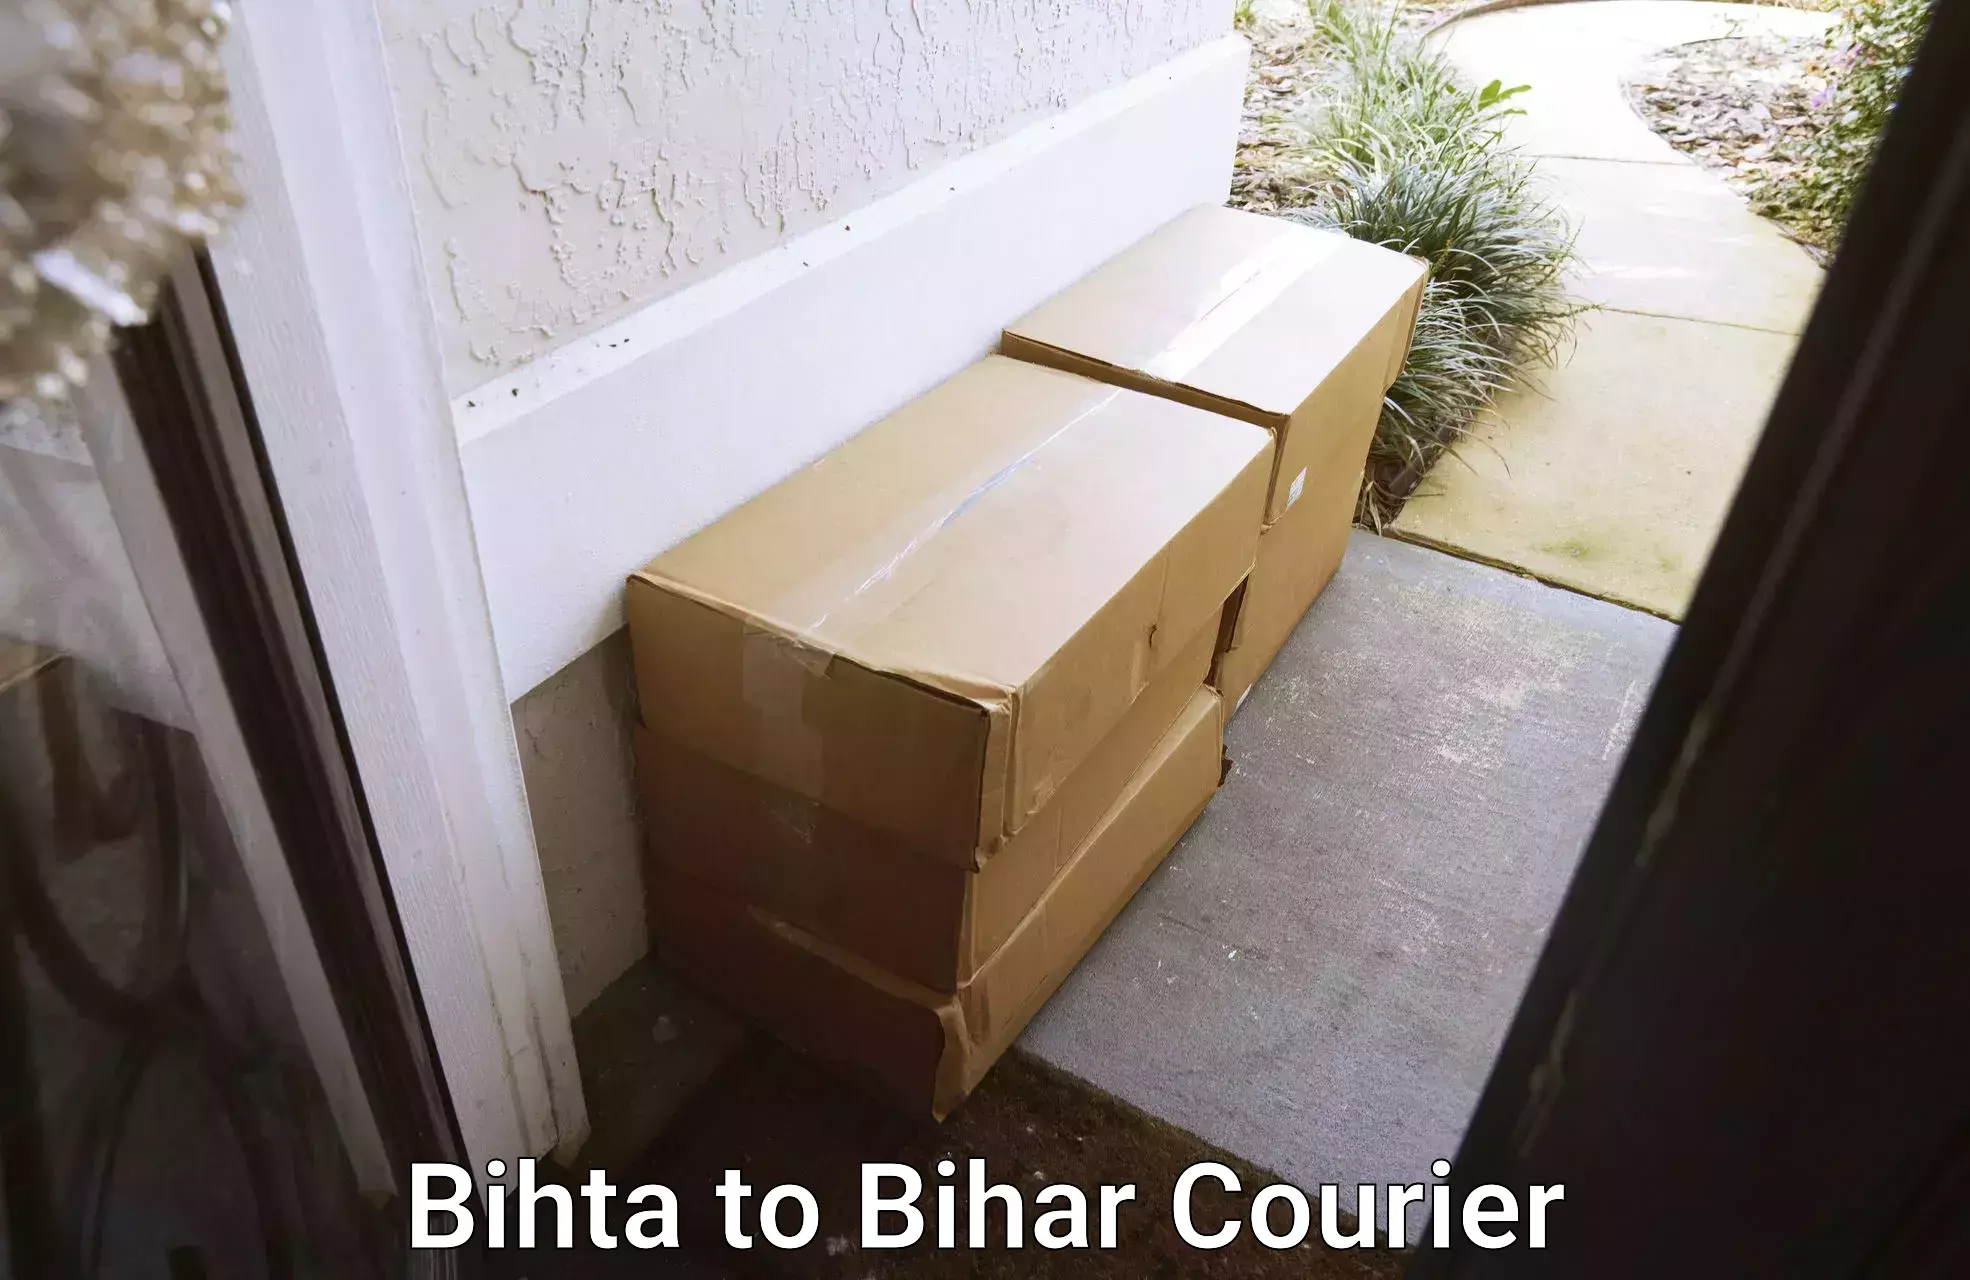 Cost-effective moving options Bihta to Bihar